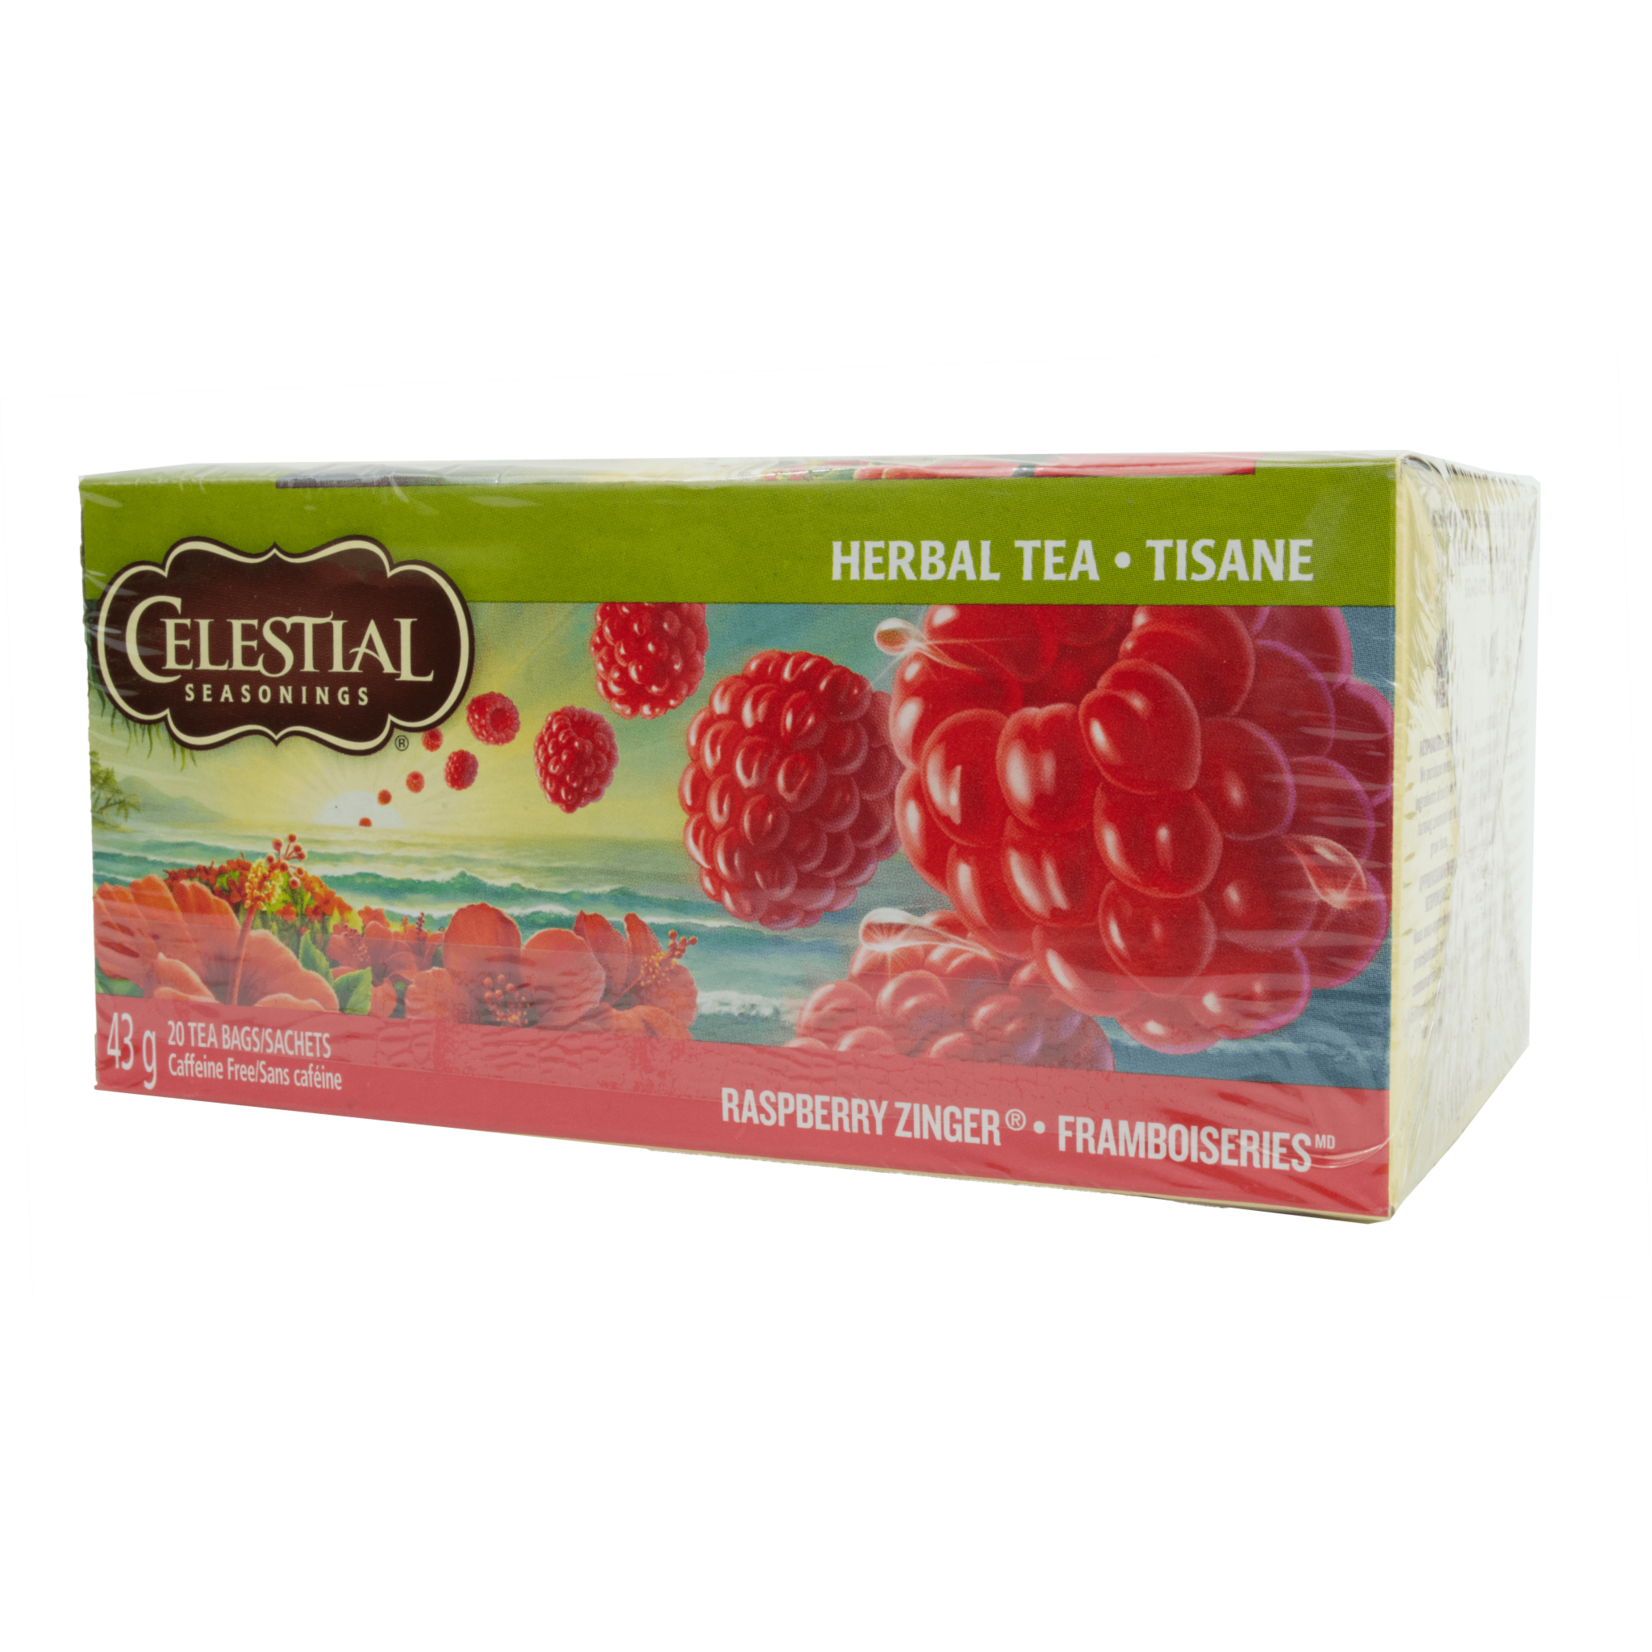 Celestial Seasonings Celestial Seasonings Raspberry Zinger Tea 43g